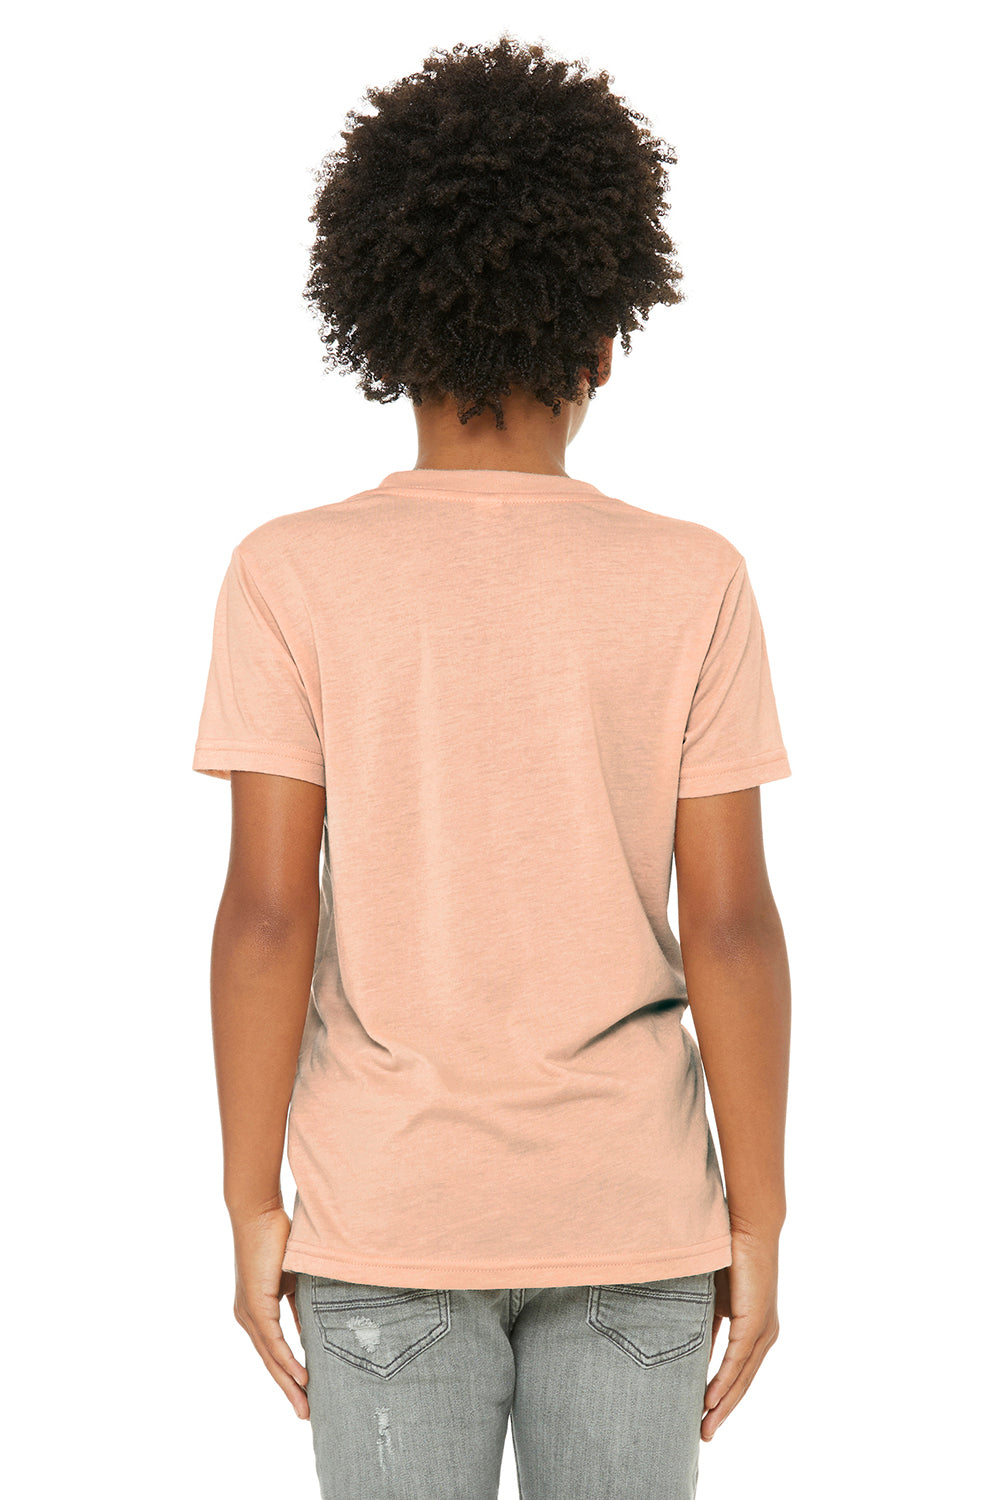 Bella + Canvas 3413Y Youth Short Sleeve Crewneck T-Shirt Peach Model Back